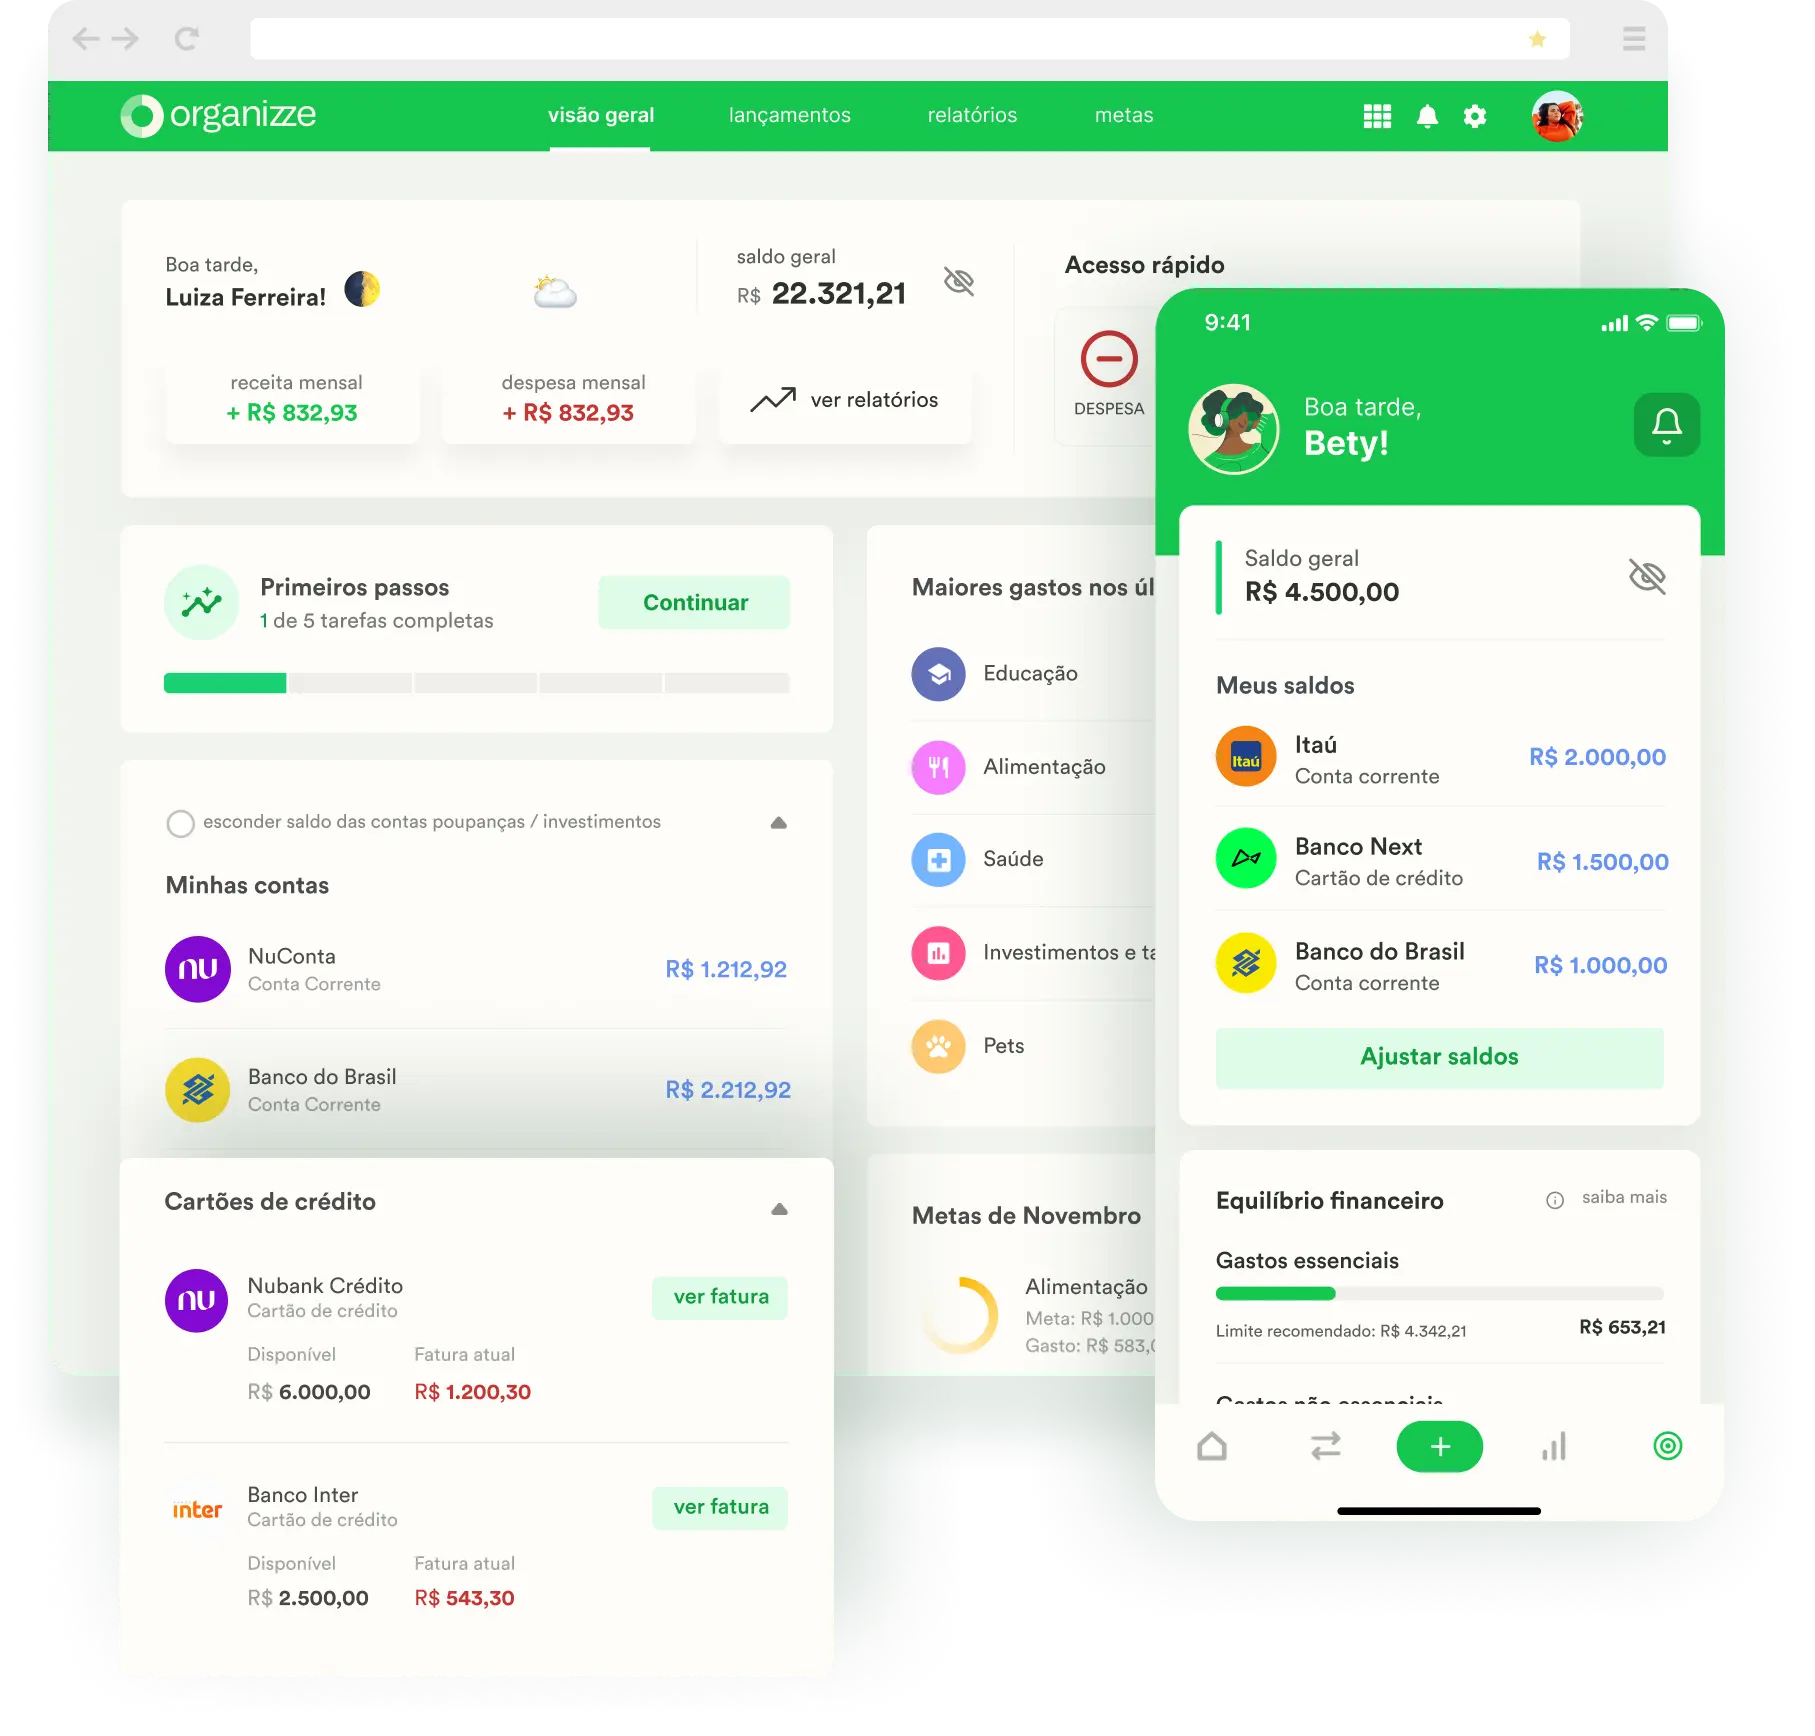 Imagem com prints de diferentes funcionalidades do Organizze, um app repleto de funcionalidades para realizar um controle financeiro pessoal eficiente